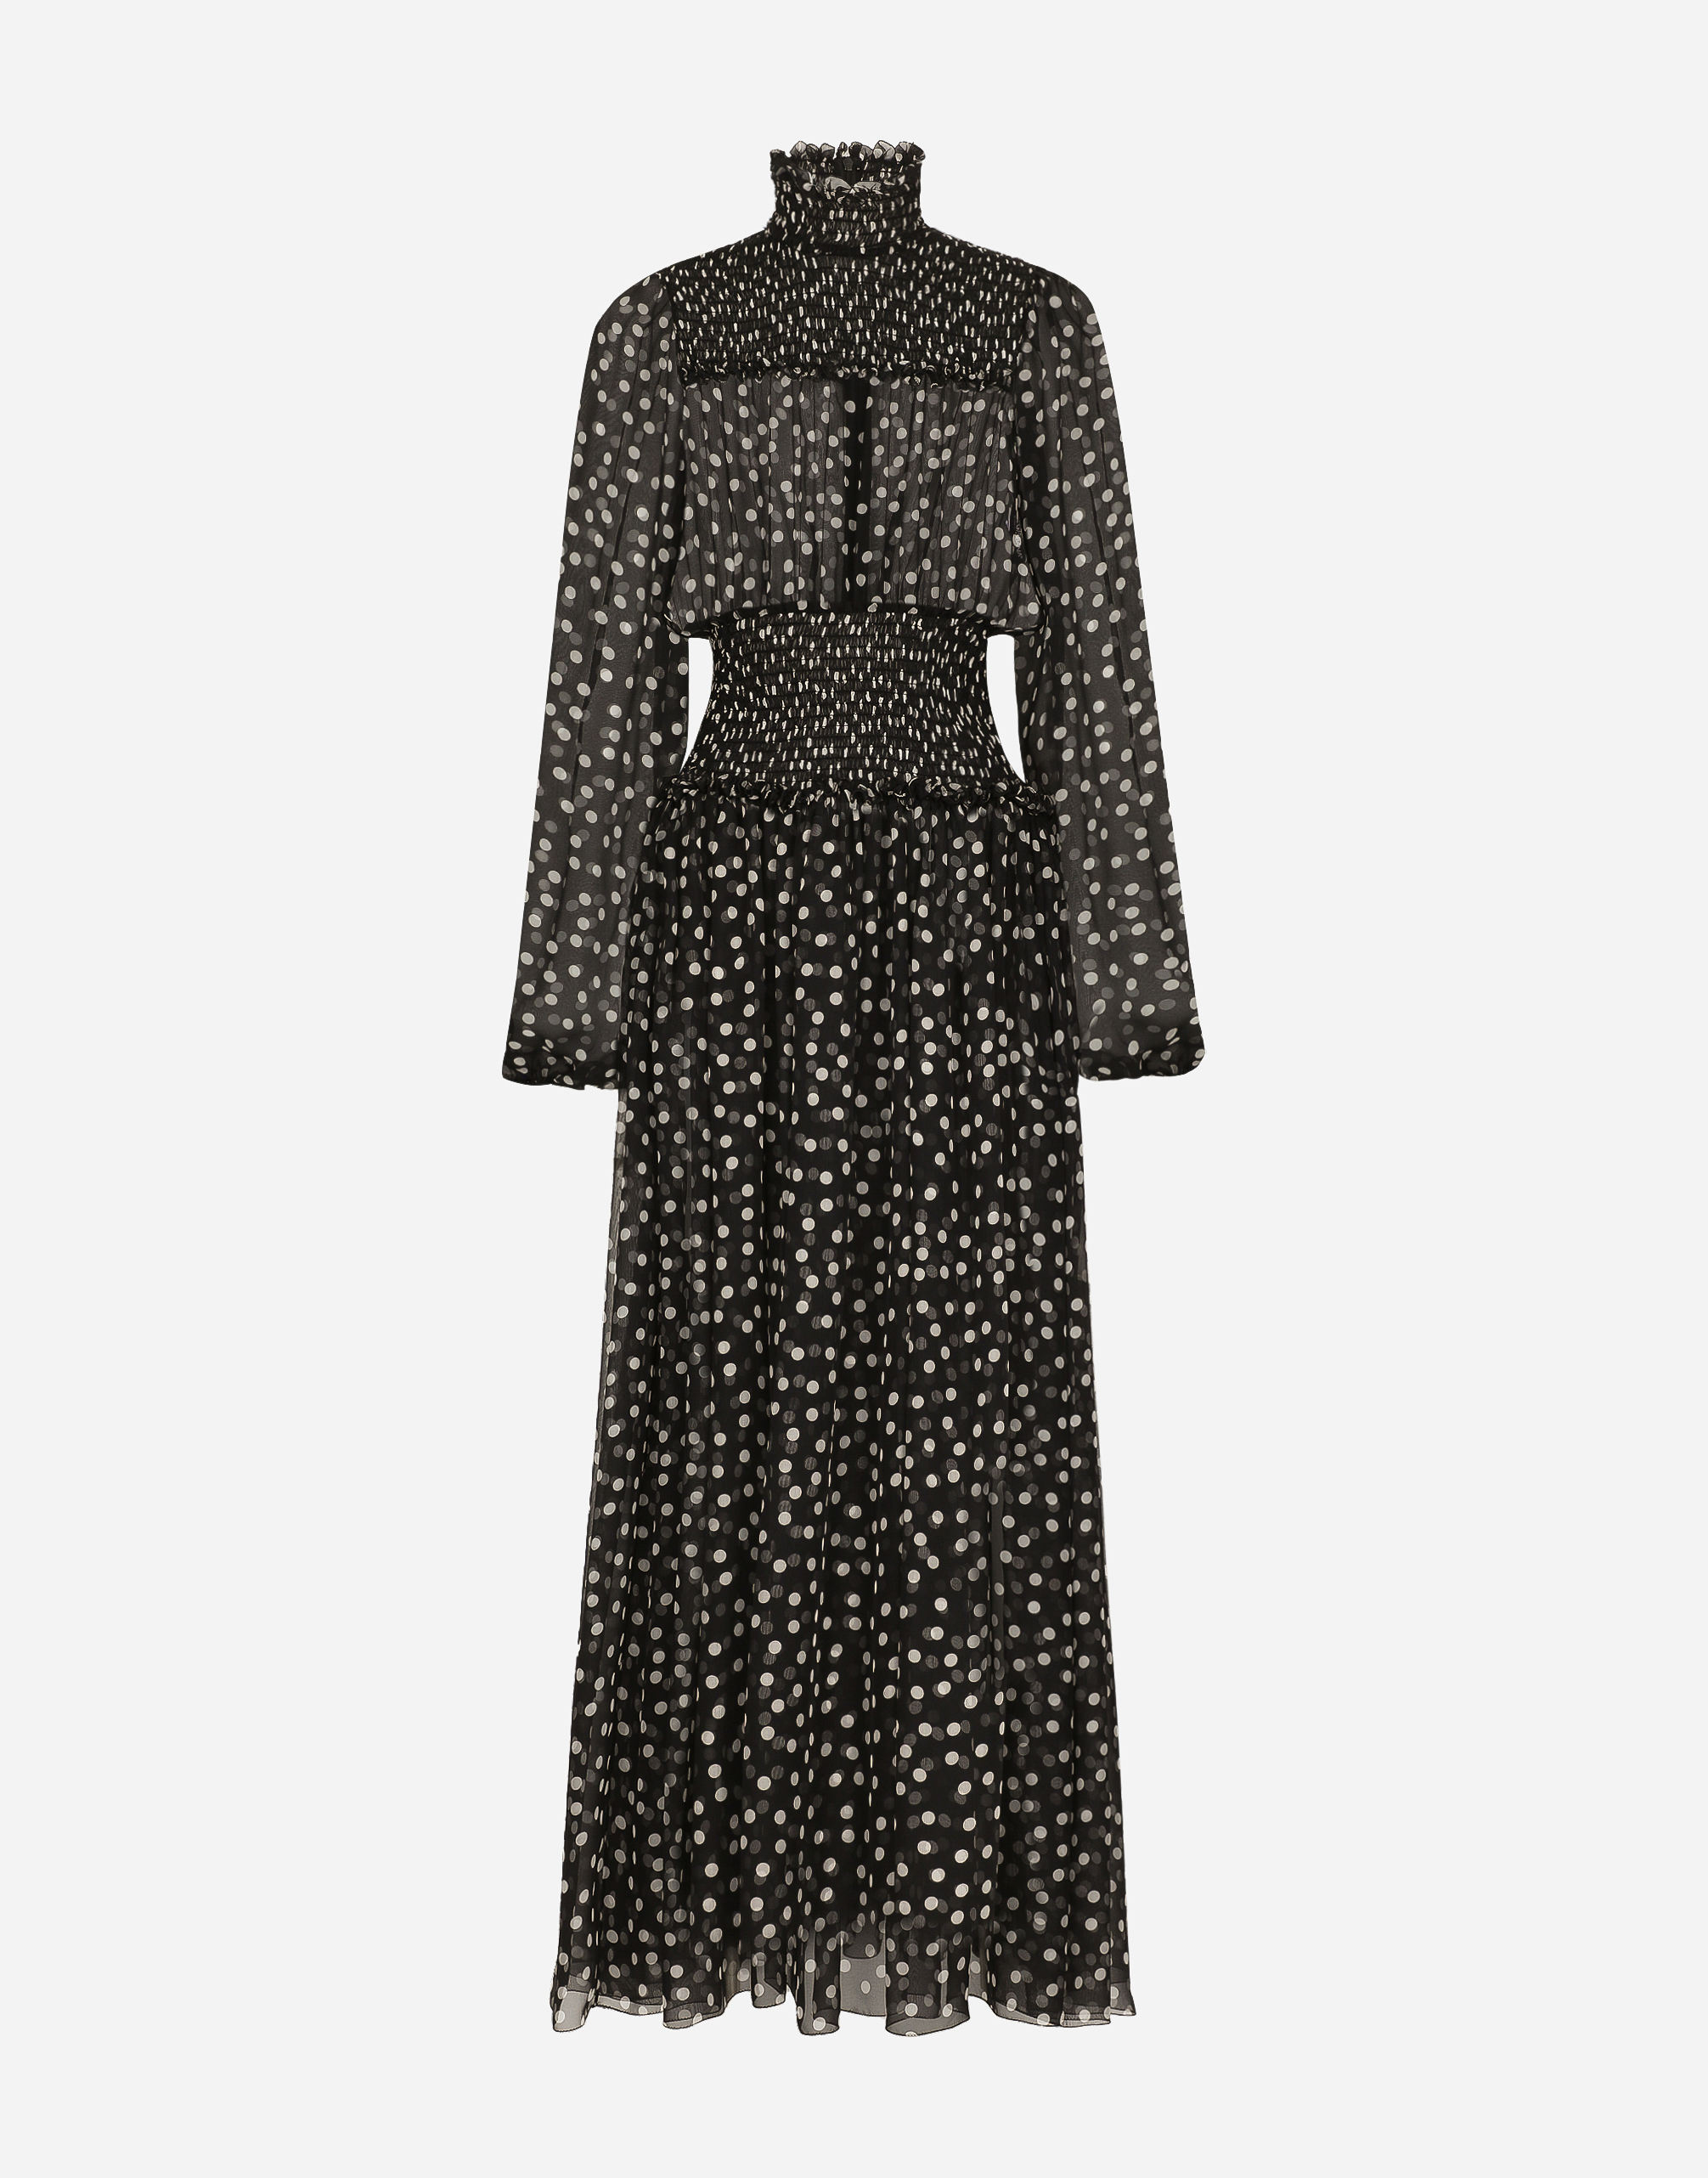 Dolce & Gabbana Polka Dot-print Silk Dress